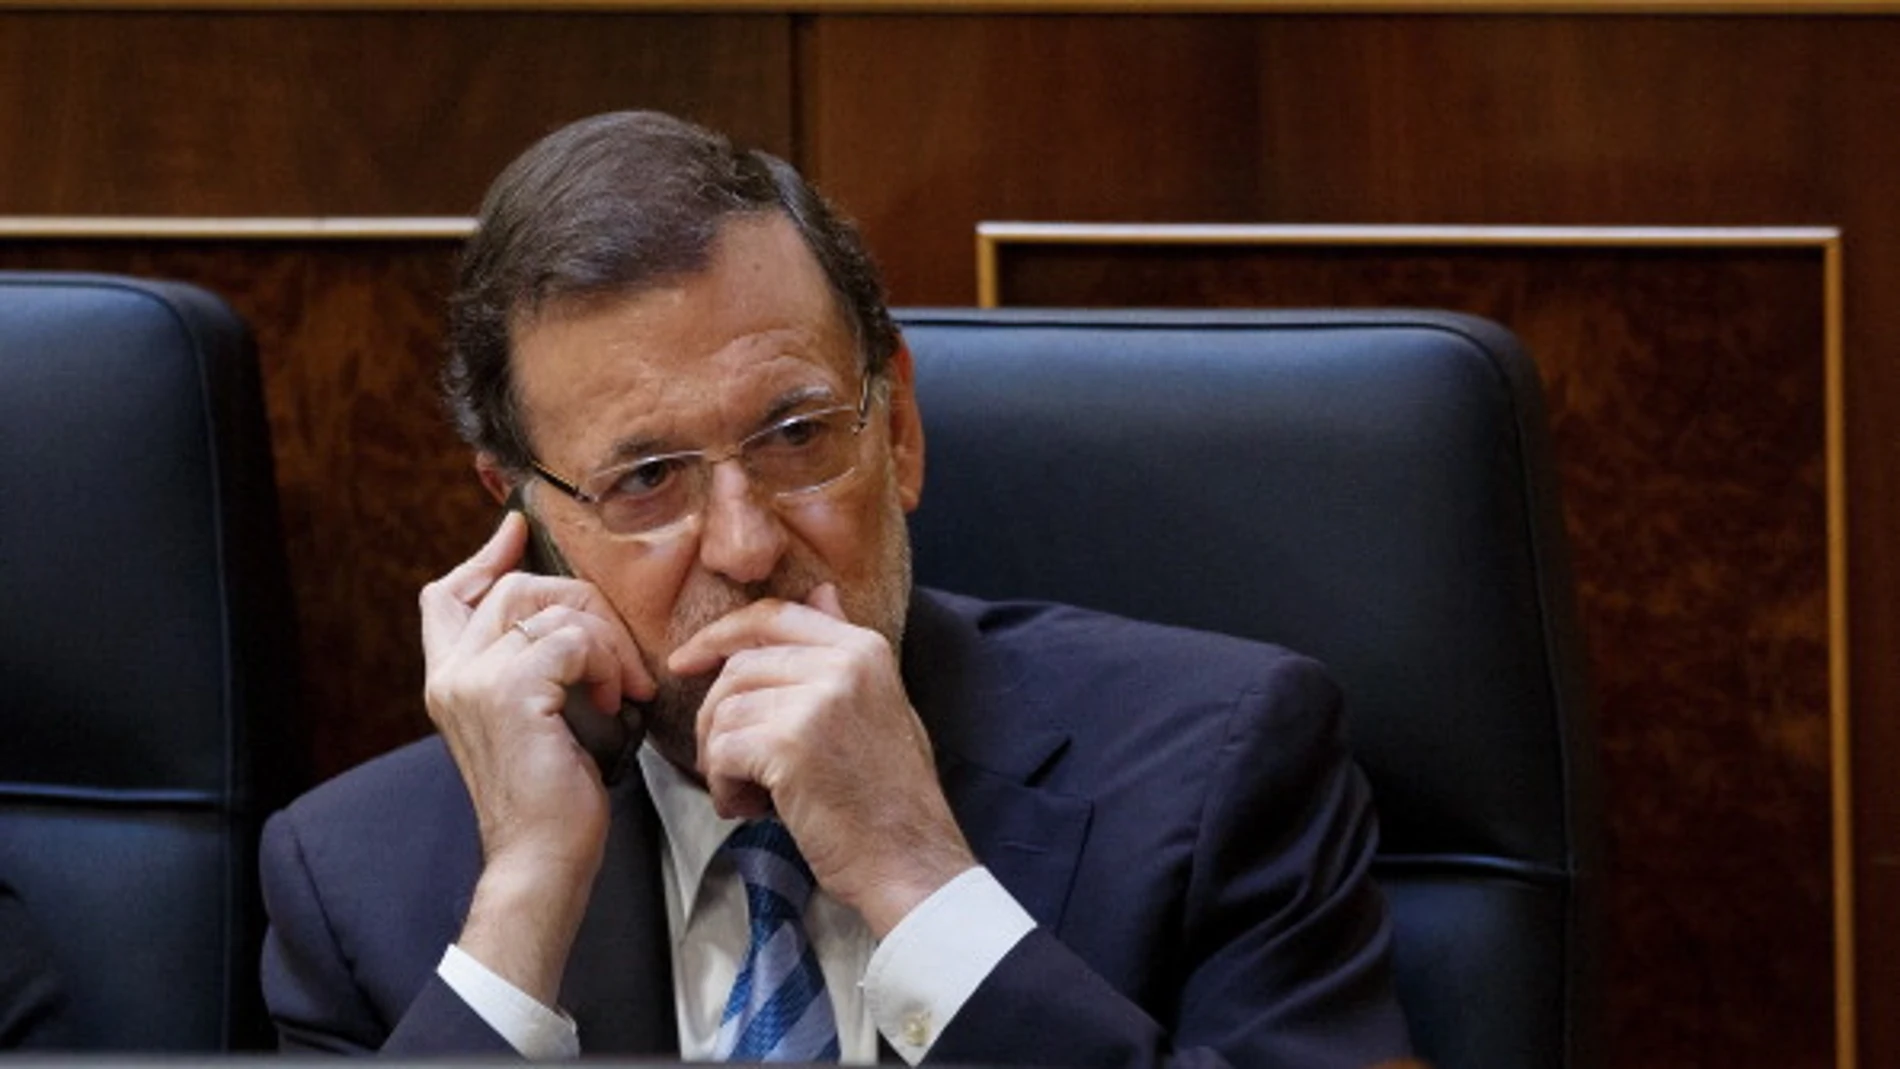 Mariano Rajoy al teléfono